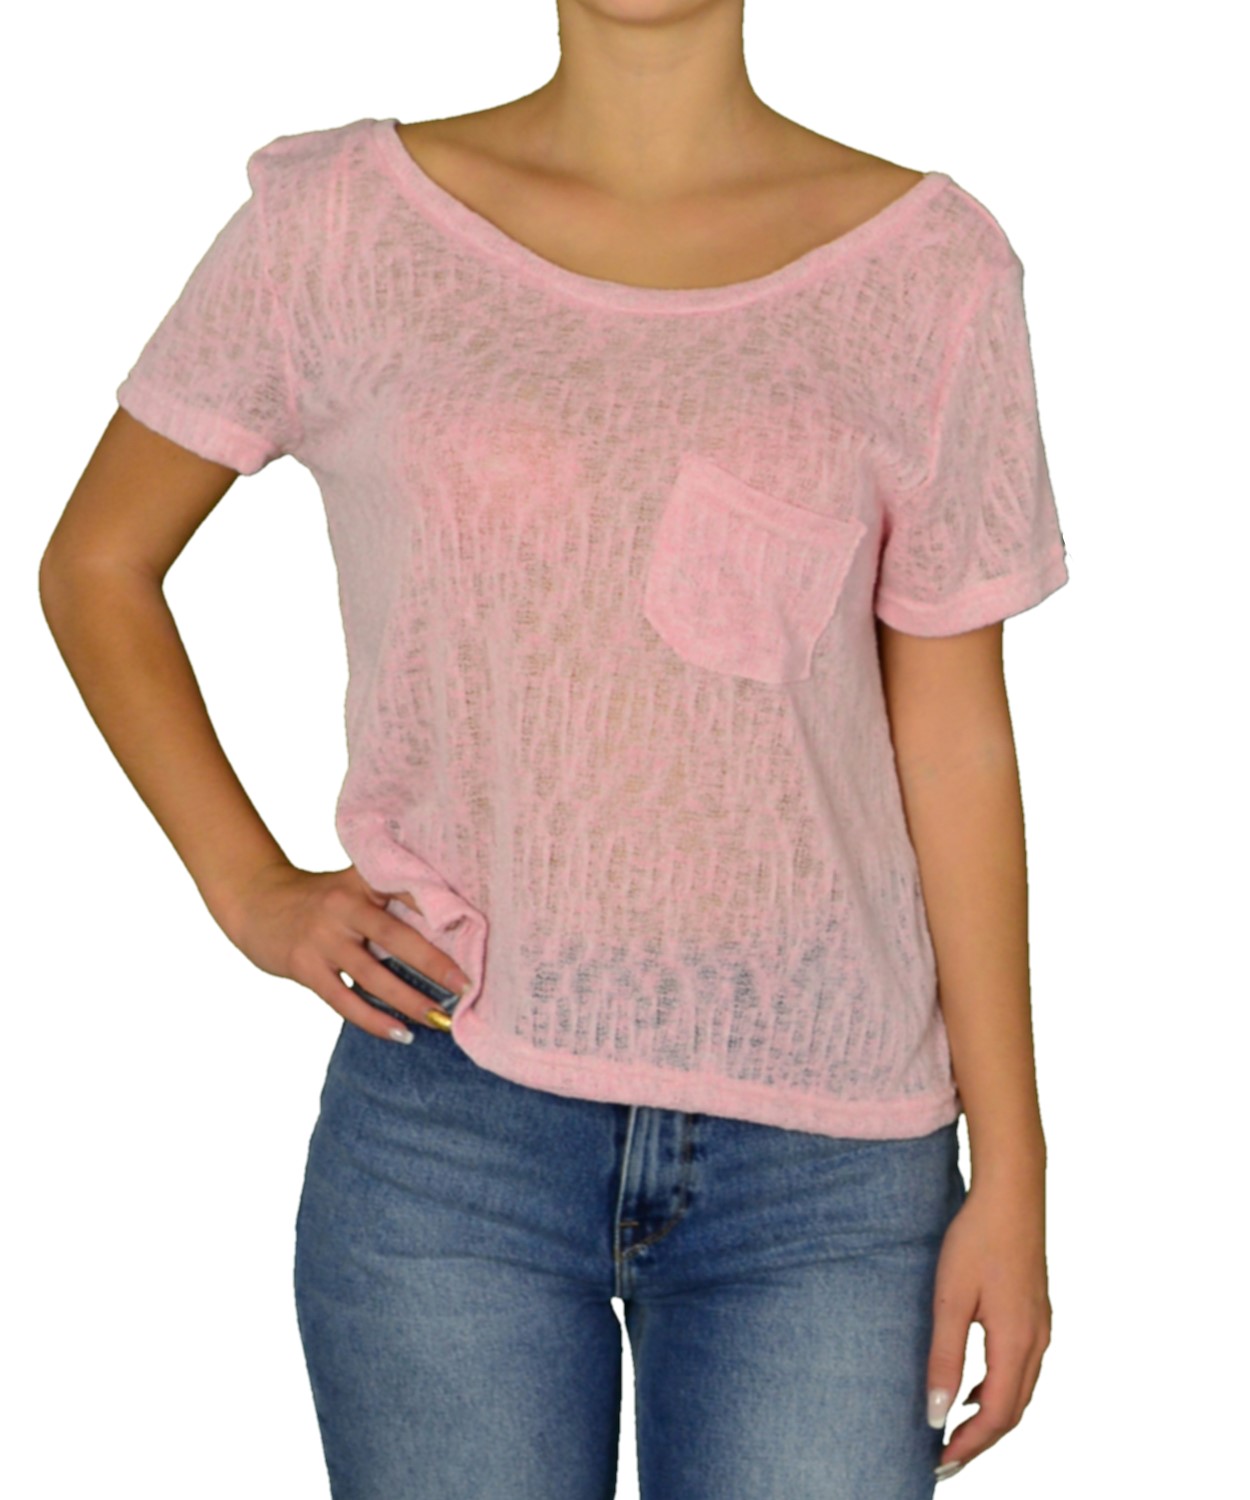 Γυναικεία πλεκτή κοντομάνικη μπλούζα Coocu ροζ 31245C